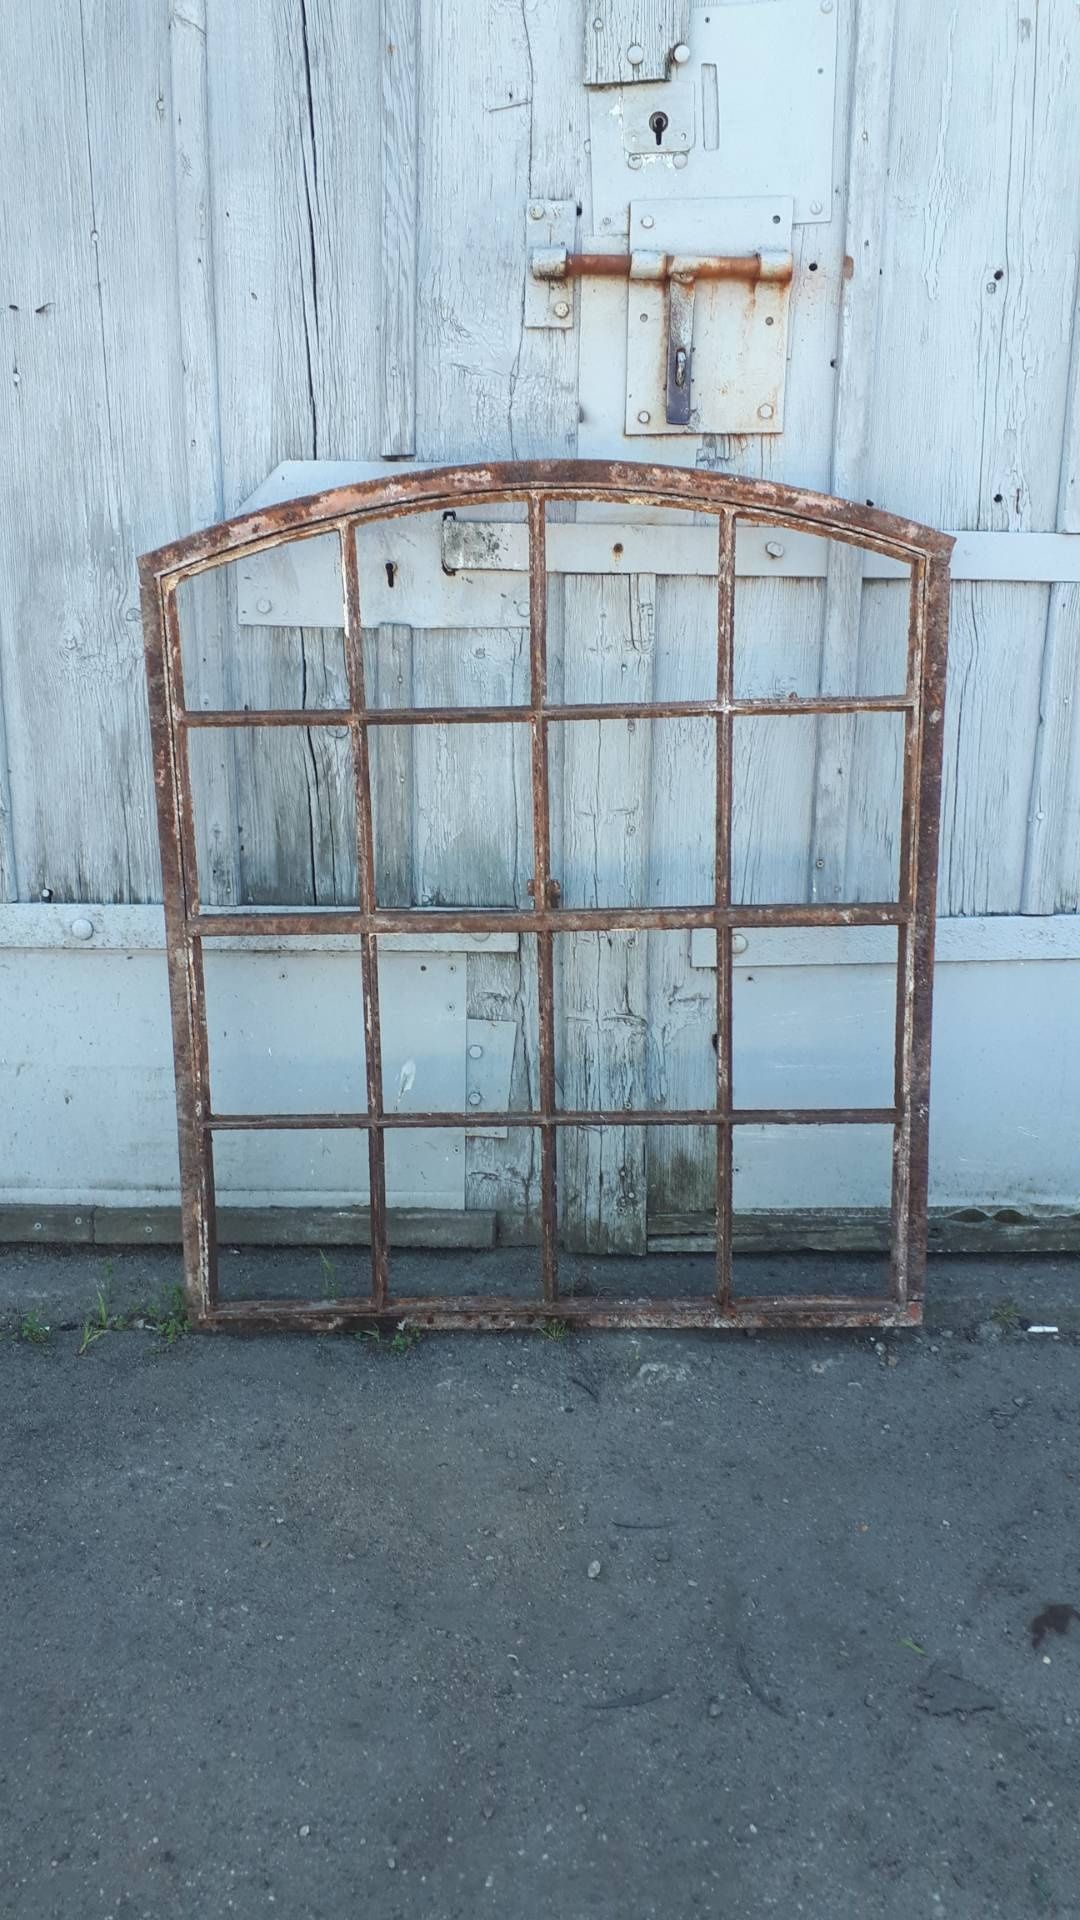 Stare duże uchylne okno metalowo- żeliwne